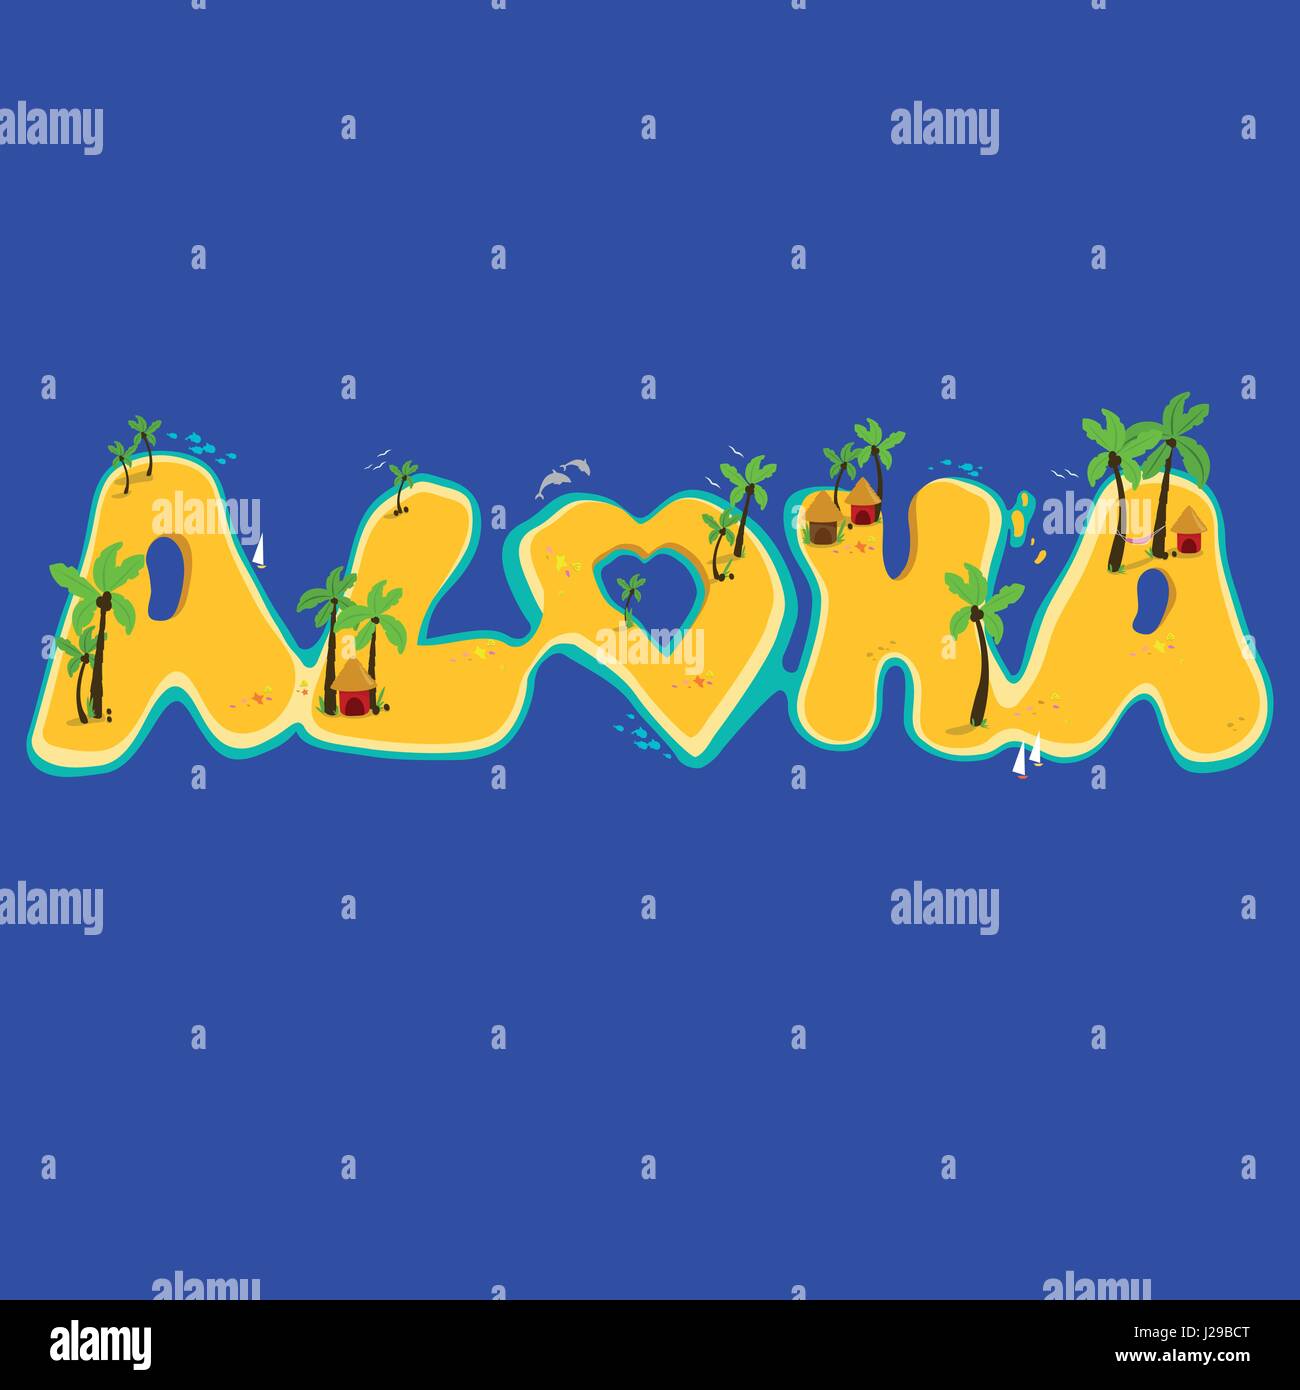 Groupe d'îles de la création du mot aloha. Aloha part lettrage en îles exotiques. Illustration de Vecteur